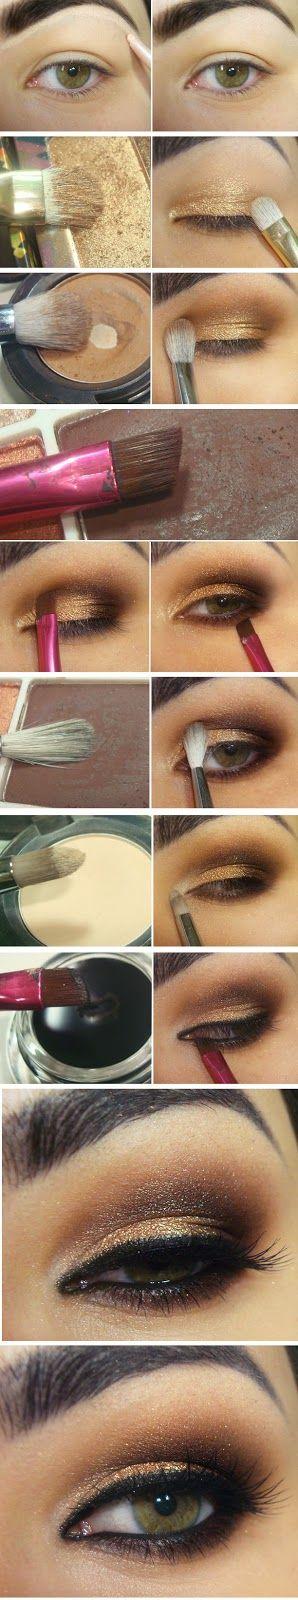 eye-makeup-step-by-step-pinterest-01_12 Oog make-up stap voor stap pinterest